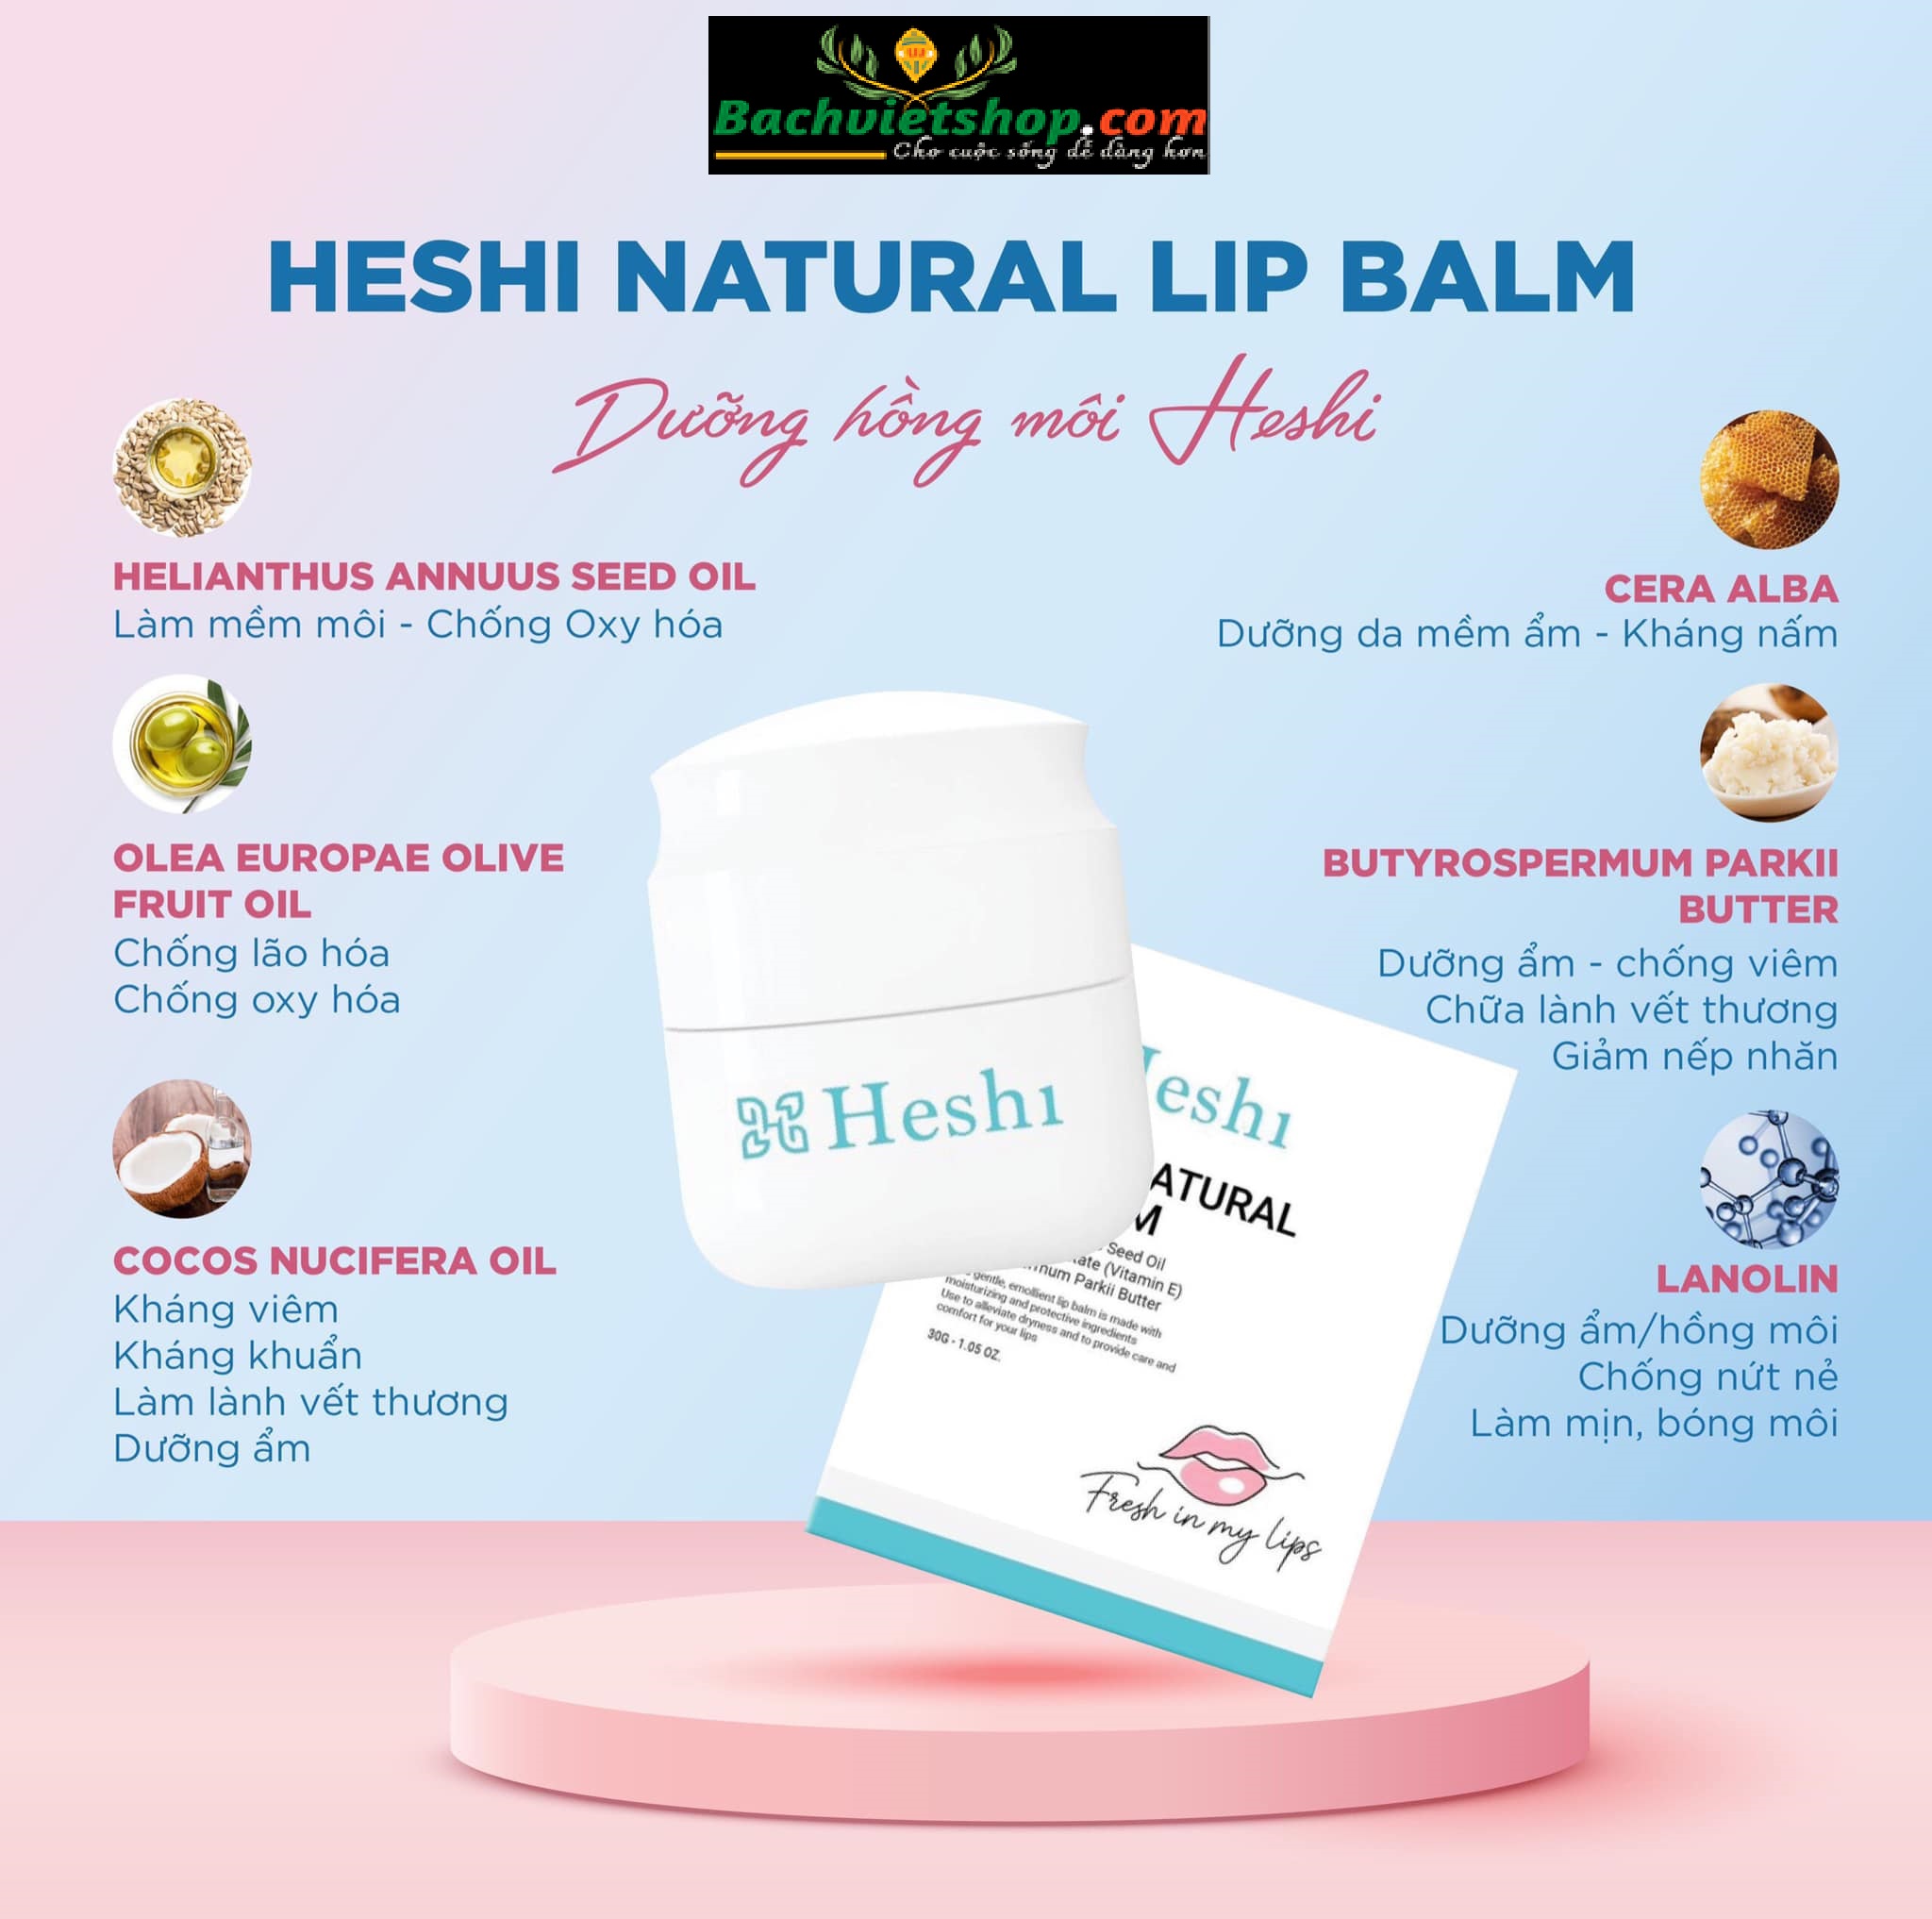 Dưỡng Hồng Môi Heshi Natural Lip Balm phiên bản độc quyền - chăm sóc những đôi môi sau phun xăm